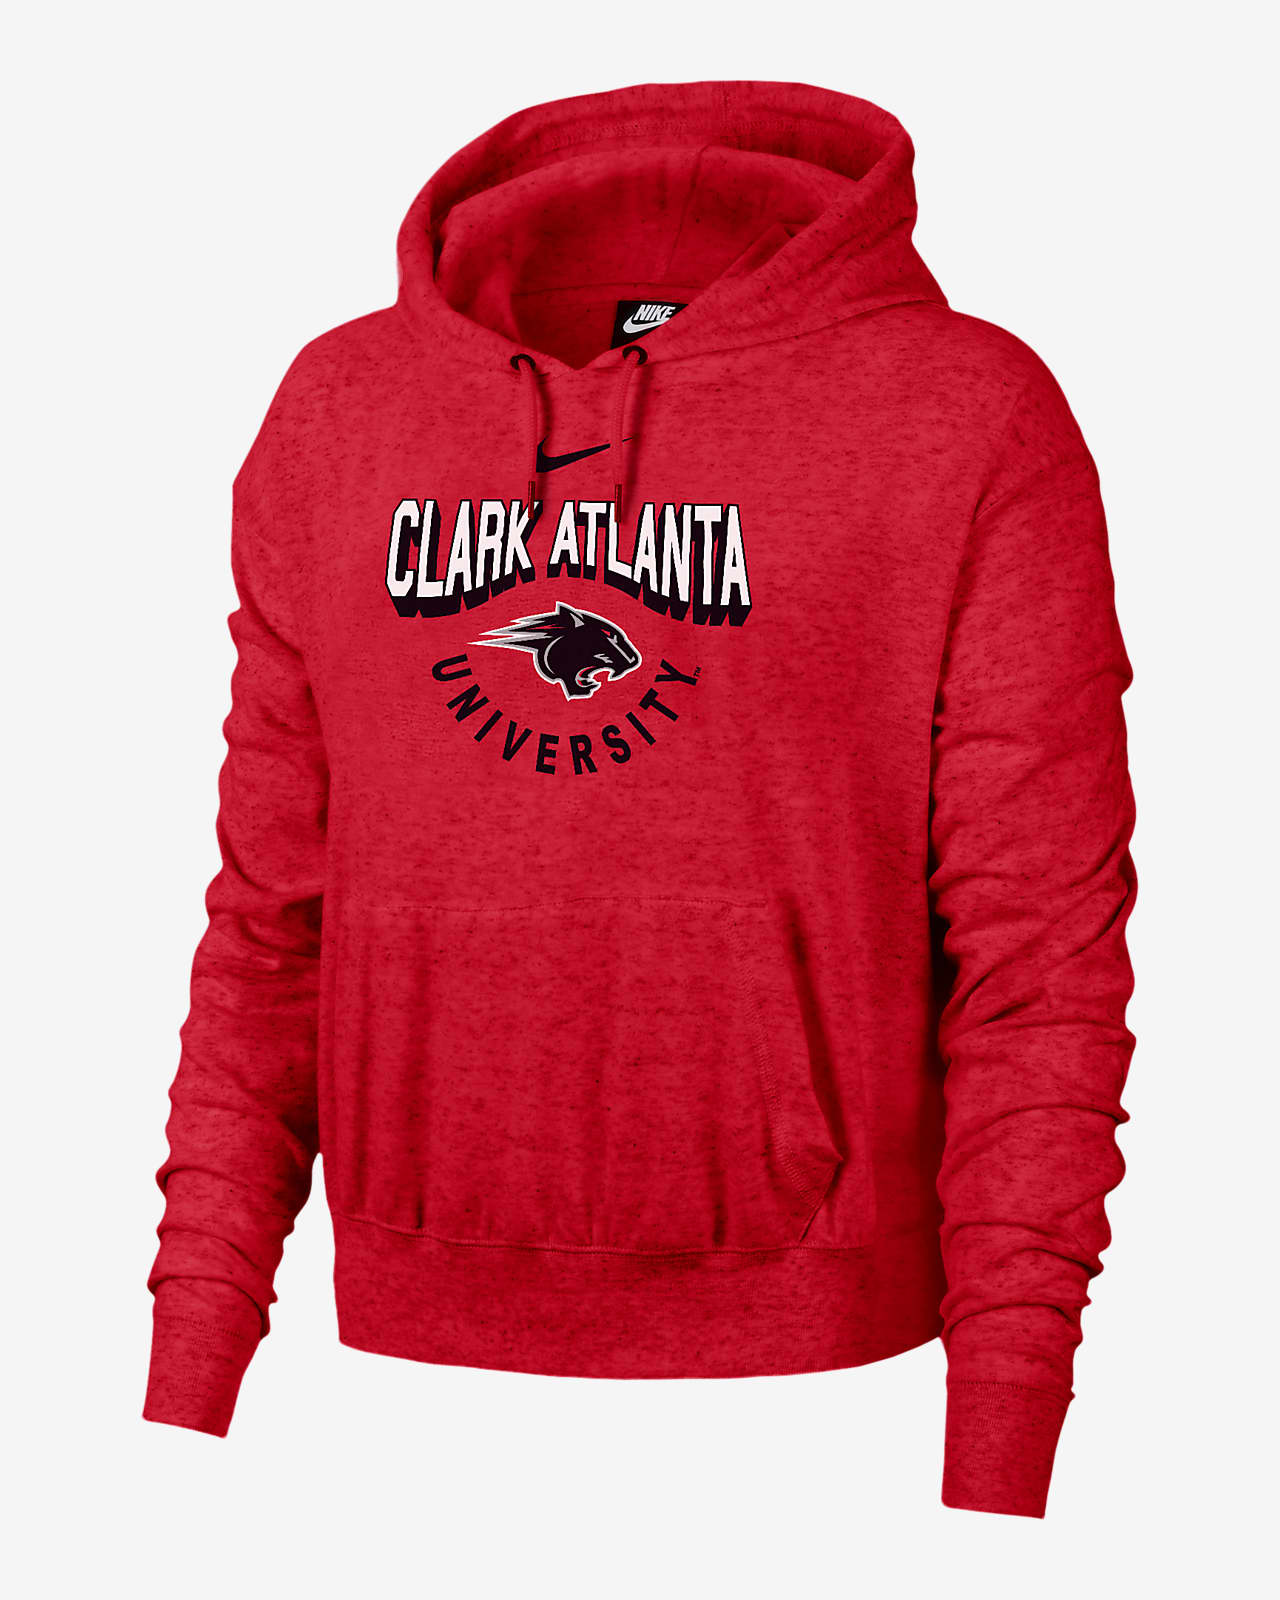 Clark Atlanta Gym Vintage Women's Nike College Hoodie